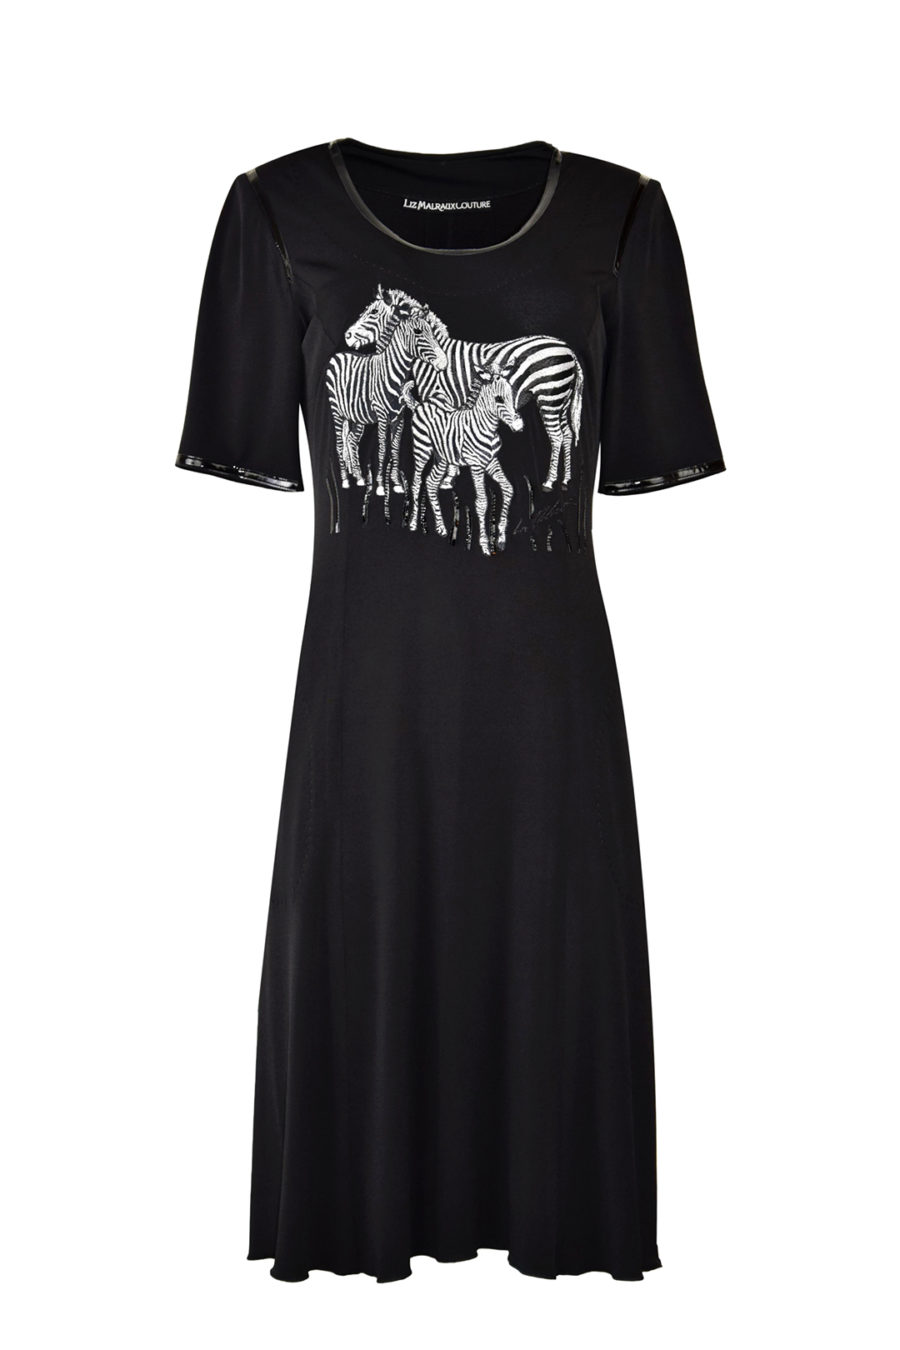 Kleid mit "Zebra - embroidery" auf schwarzen Jersey, Kurzarm